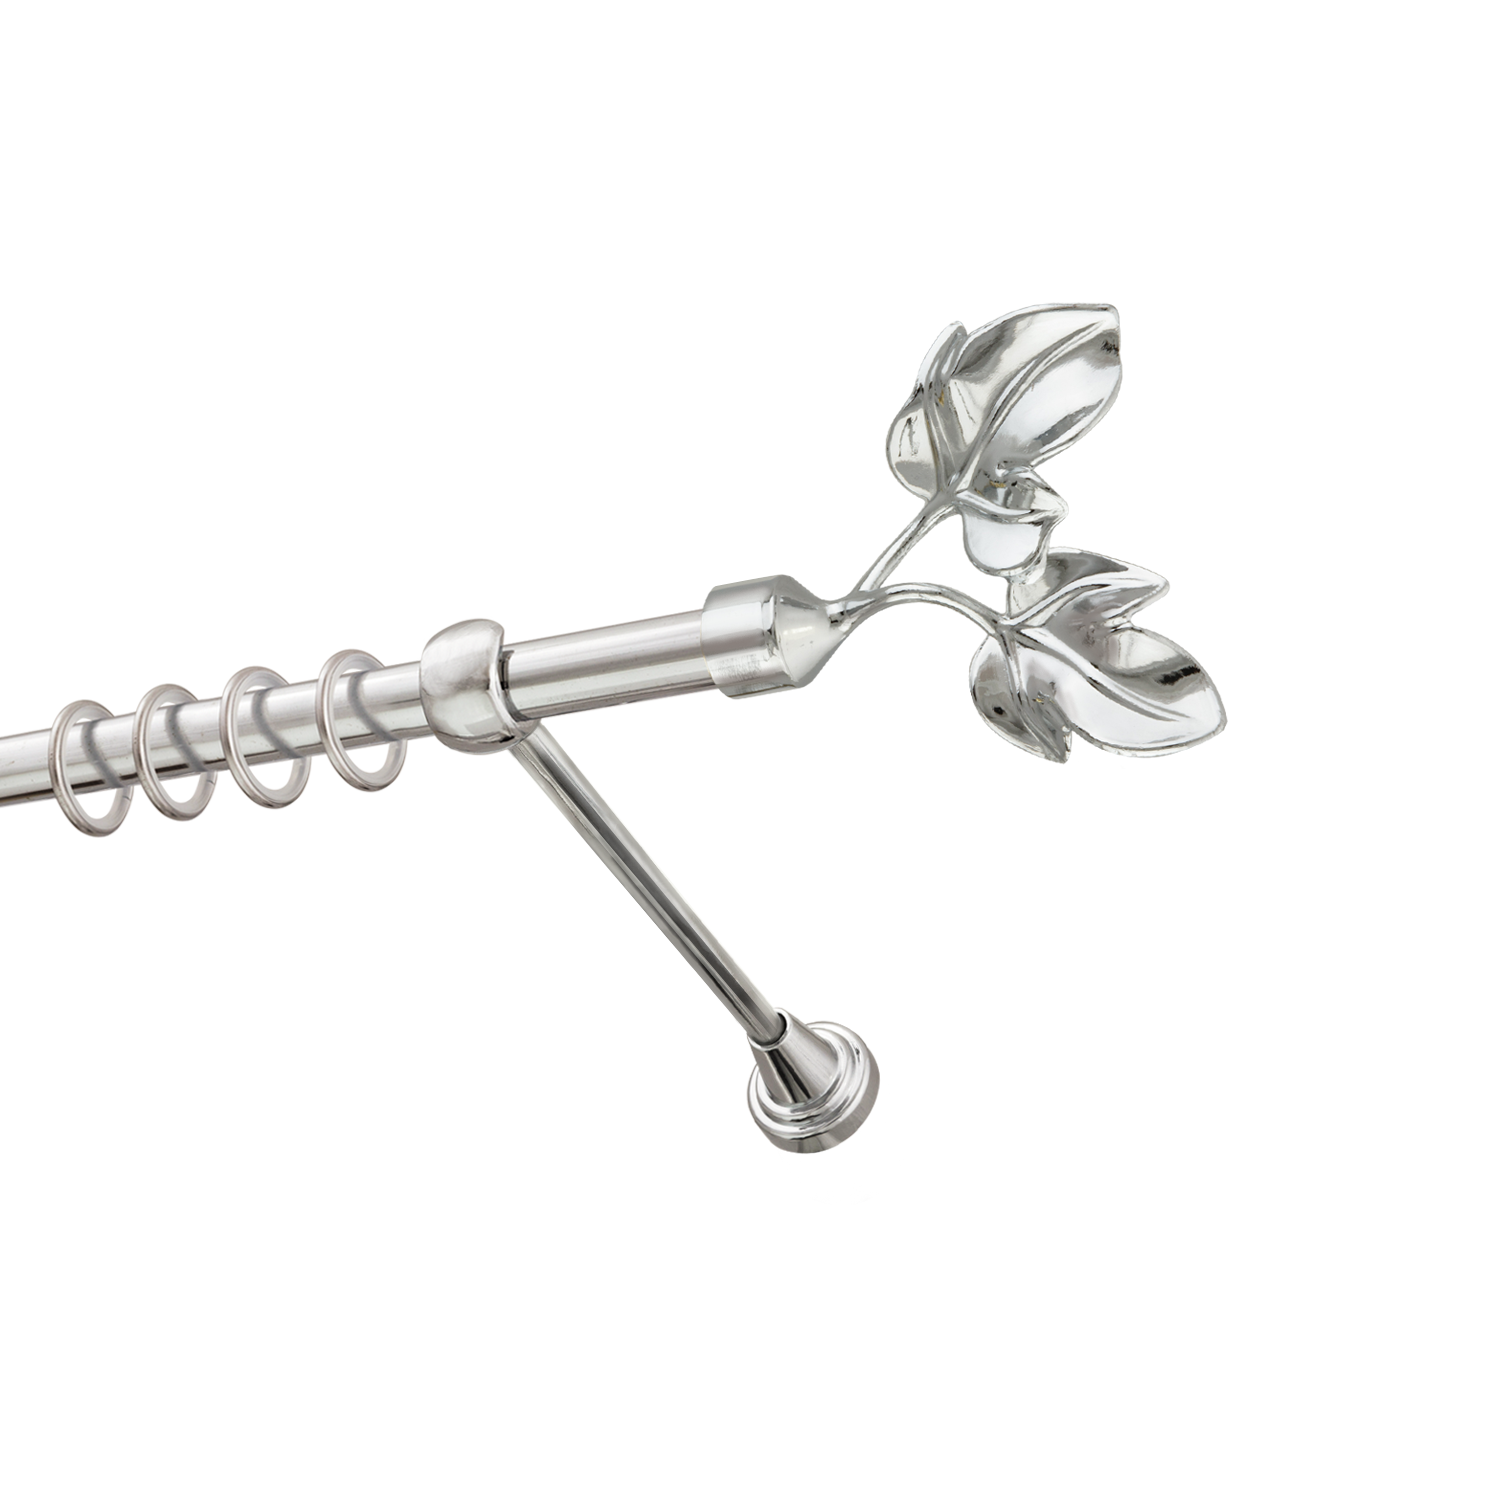 Металлический карниз для штор Листья, однорядный 16 мм, серебро, гладкая штанга, длина 240 см - фото Wikidecor.ru